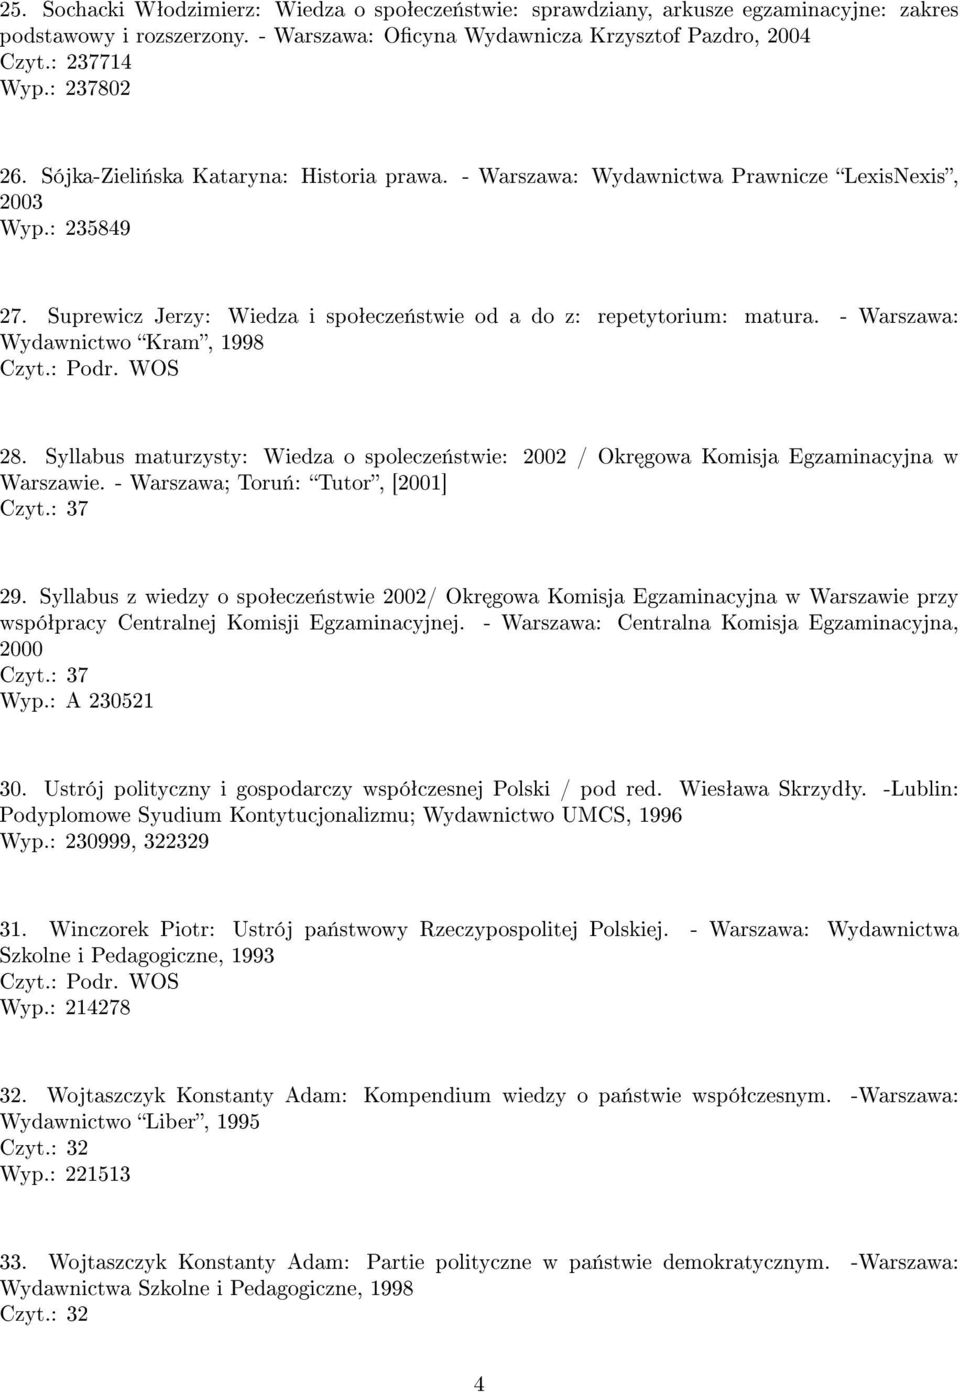 - Warszawa: Wydawnictwo Kram, 1998 28. Syllabus maturzysty: Wiedza o spolecze«stwie: 2002 / Okr gowa Komisja Egzaminacyjna w Warszawie. - Warszawa; Toru«: Tutor, [2001] Czyt.: 37 29.